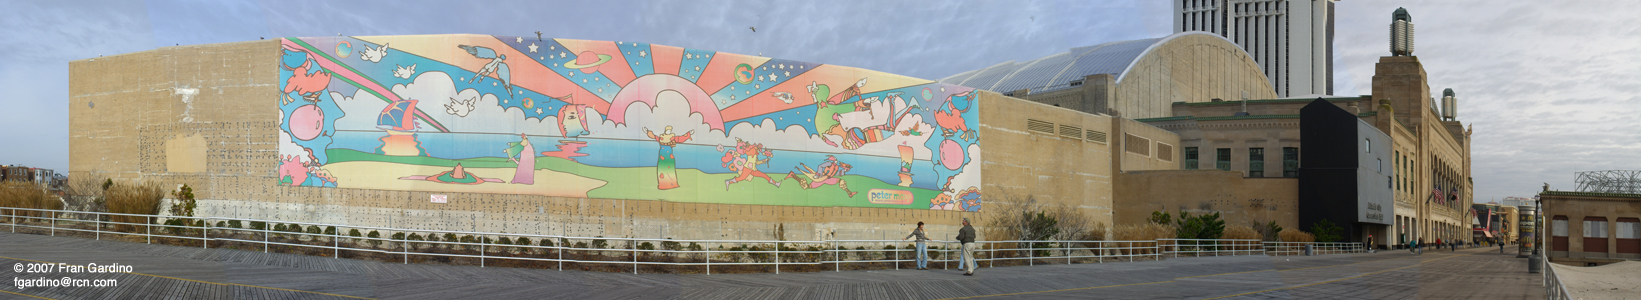 Peter Max Mural, Atlantic City